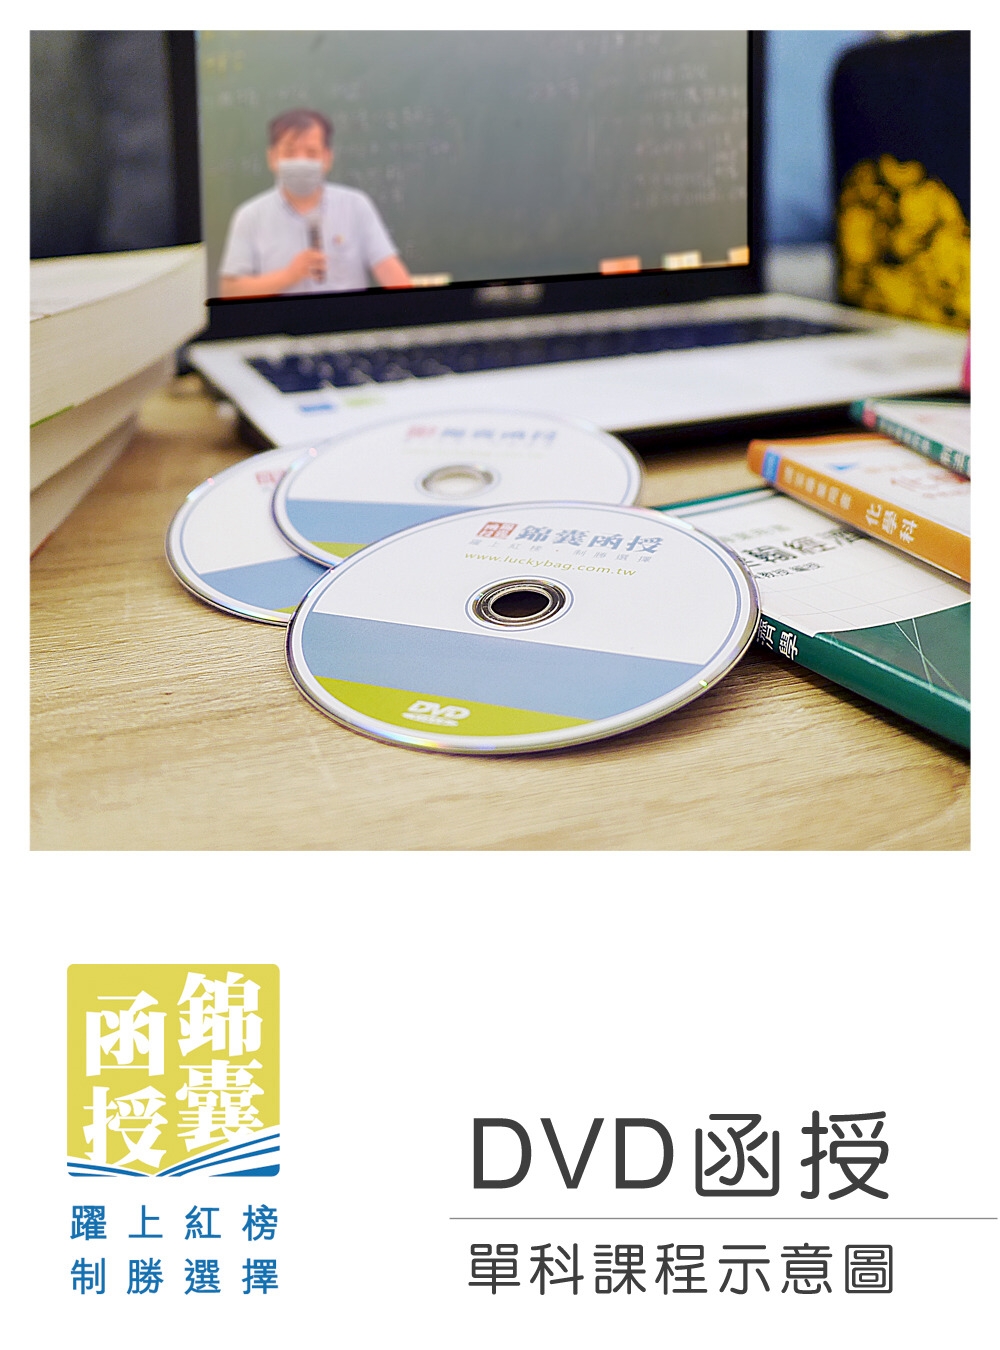 【DVD函授】資料通訊/資通網路：單科課程(112版)